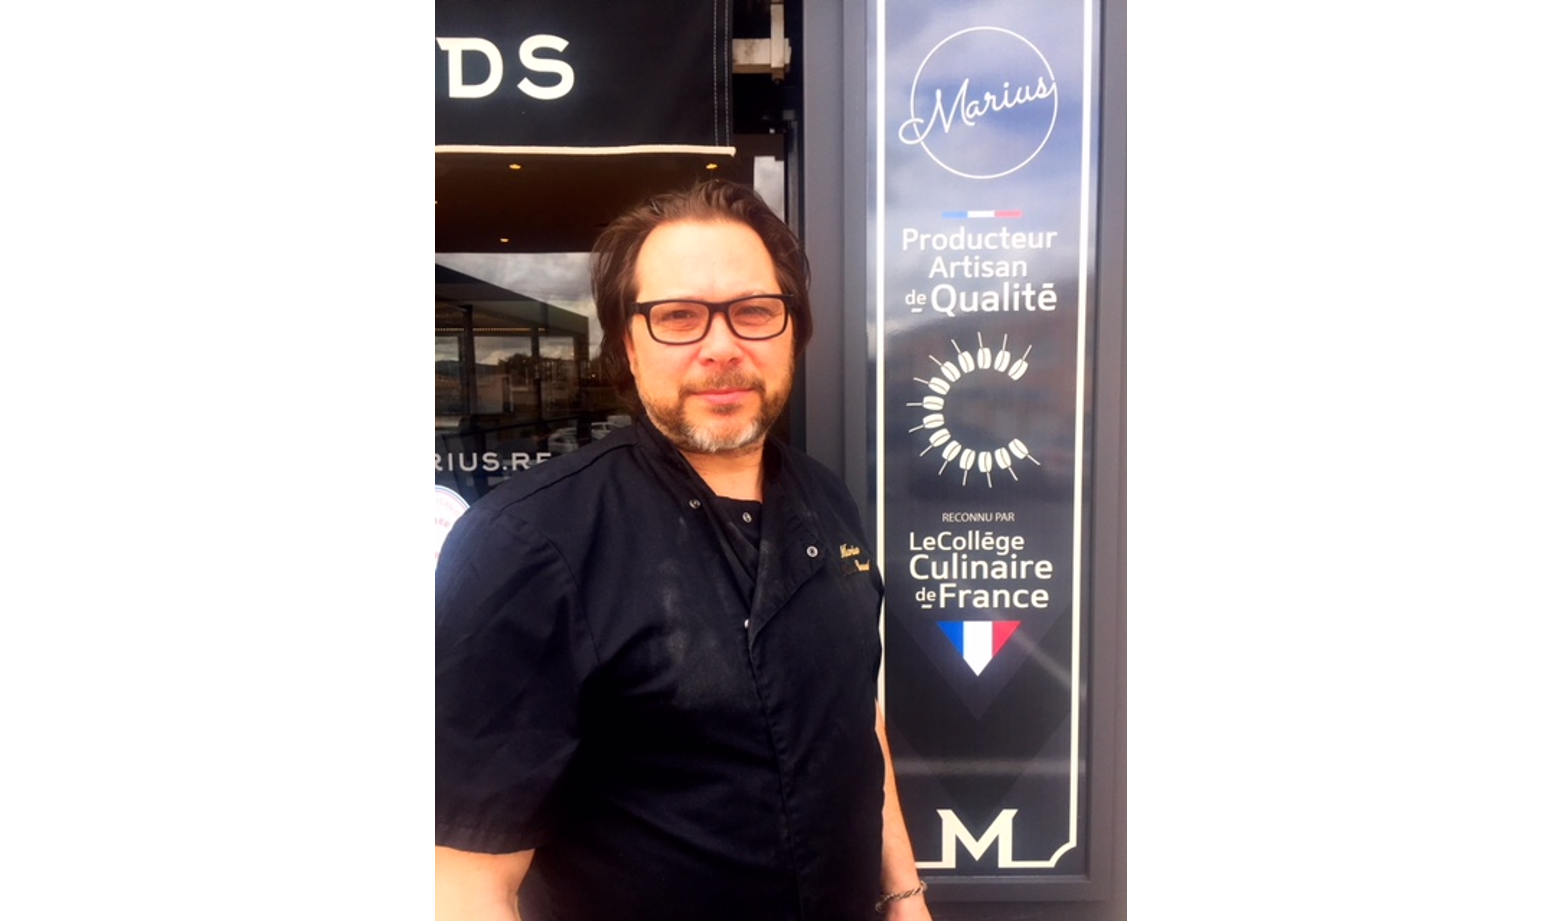 Laurent Silli, Producteur Artisan de Qualité à la Maison Marius à Marseille - Collège Culinaire de France